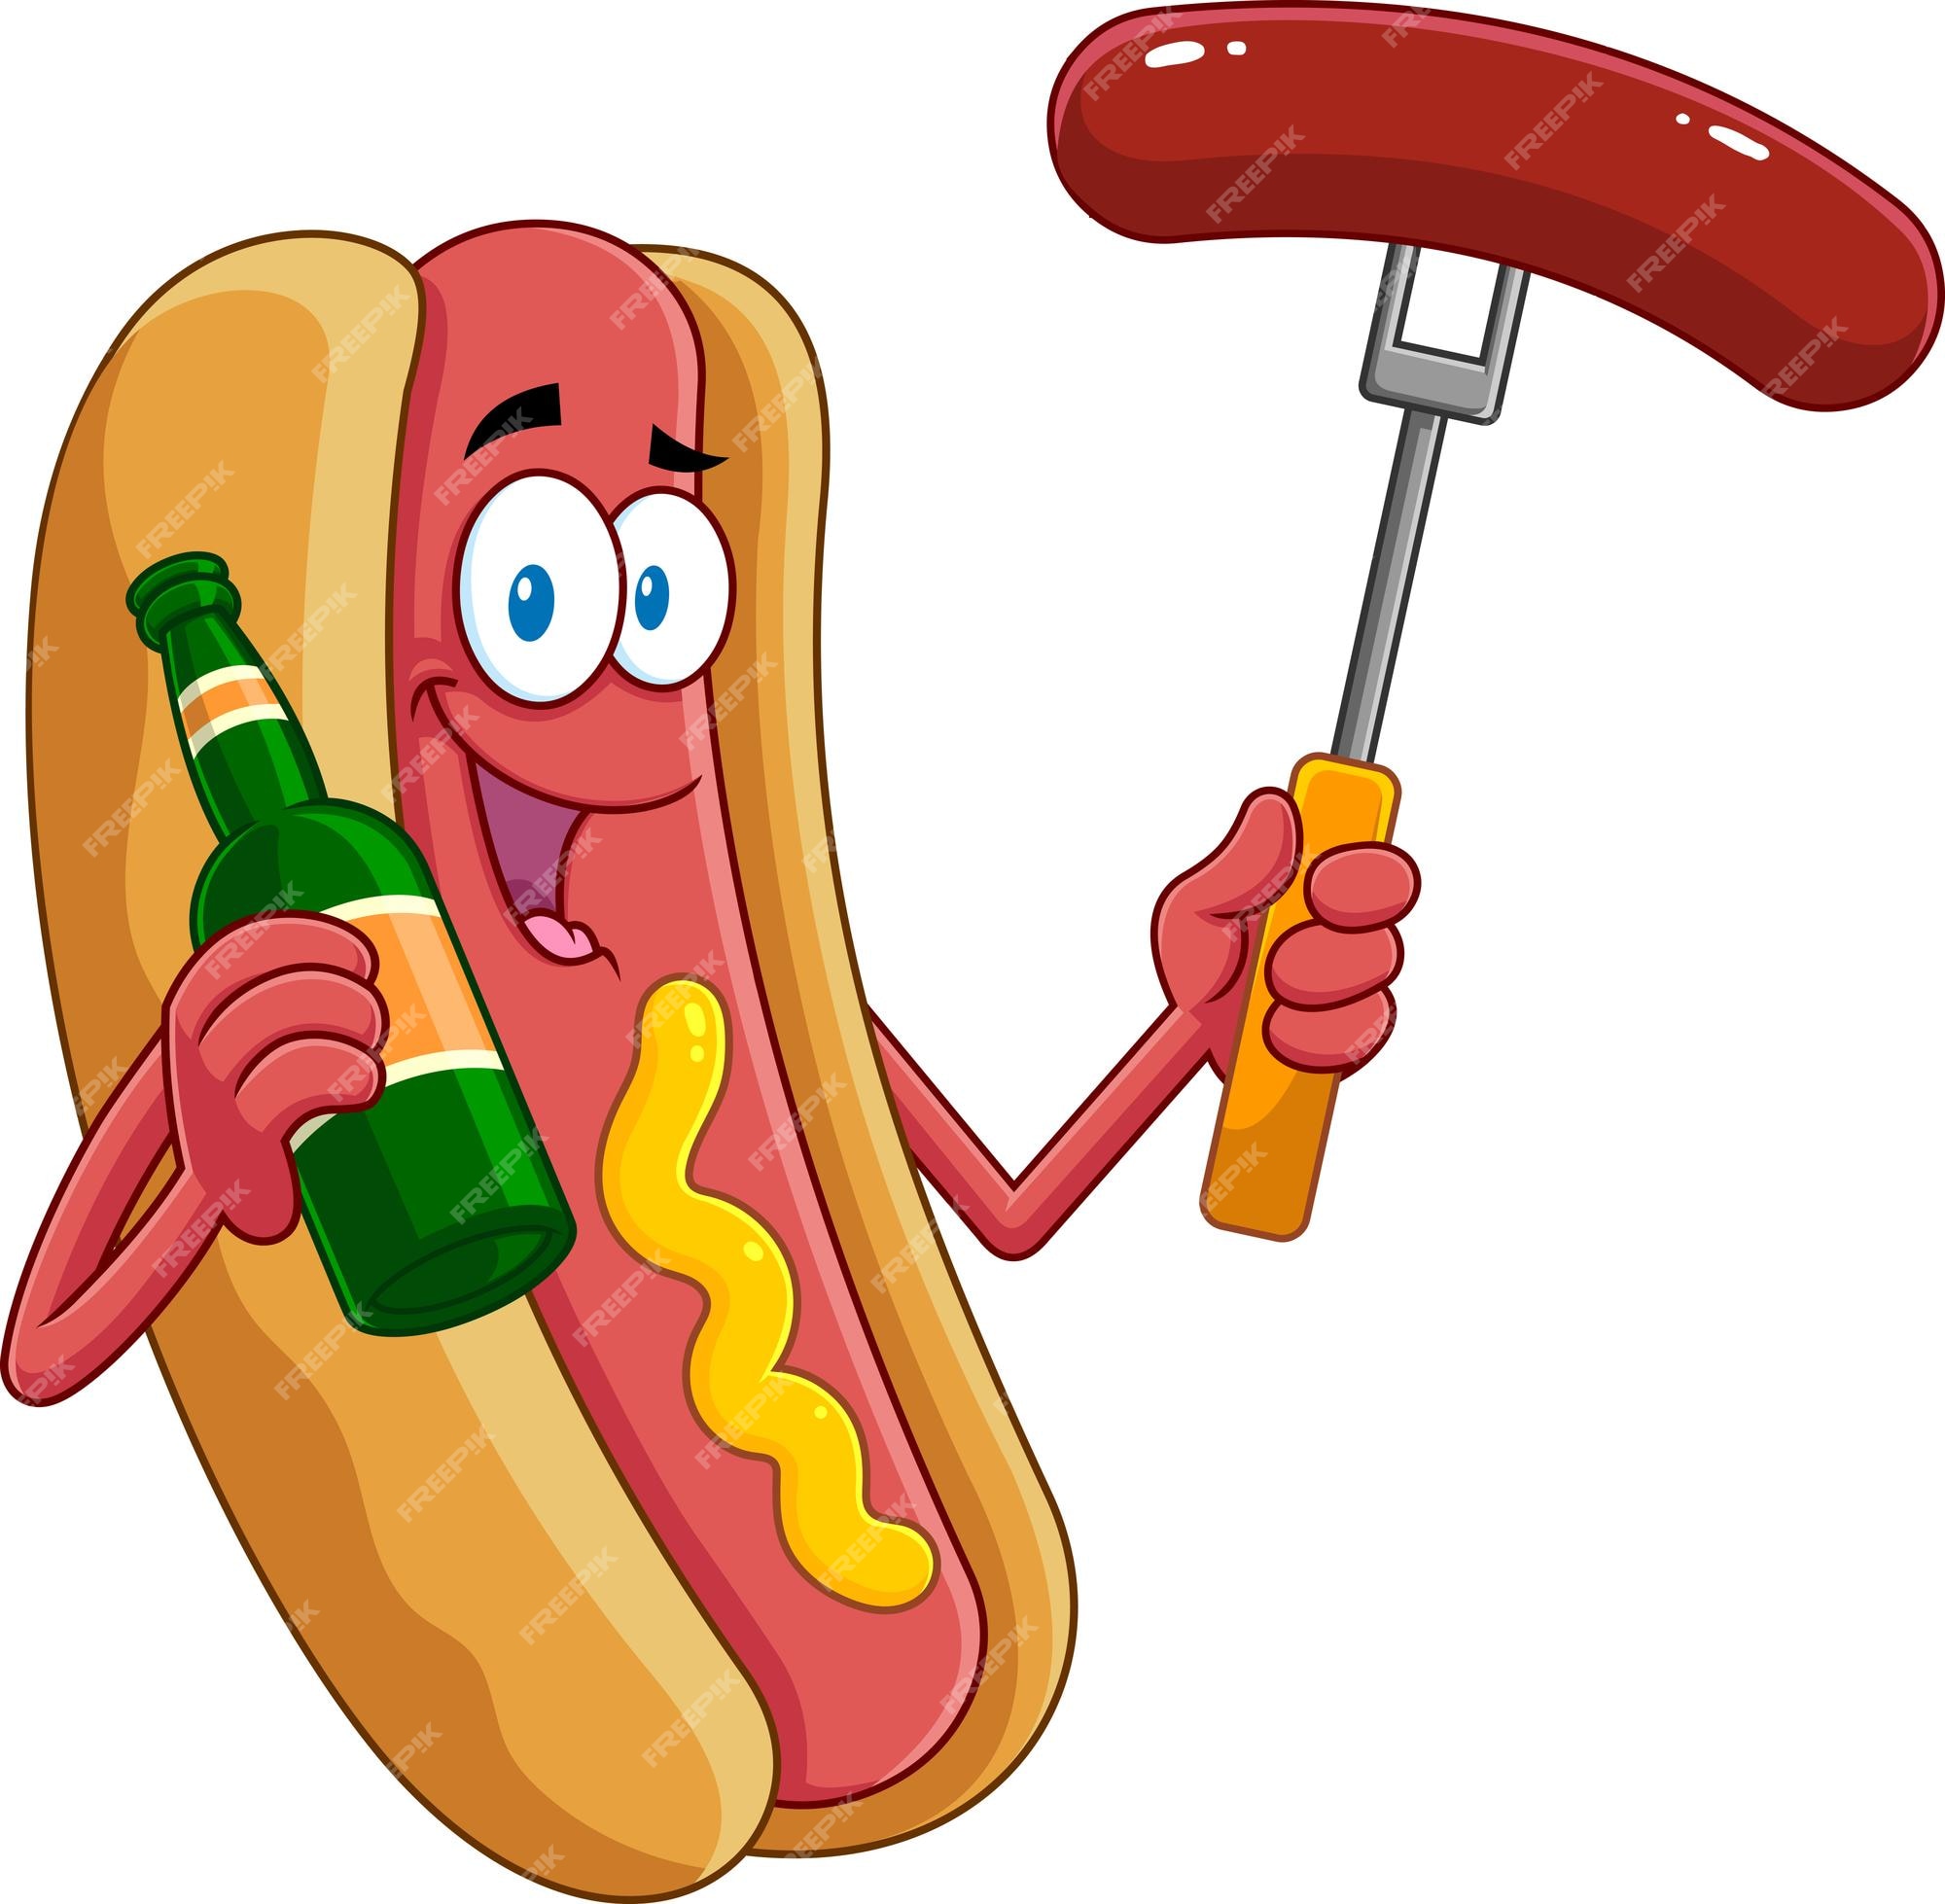 Hot Dog Clip Art Images - Free Download on Freepik